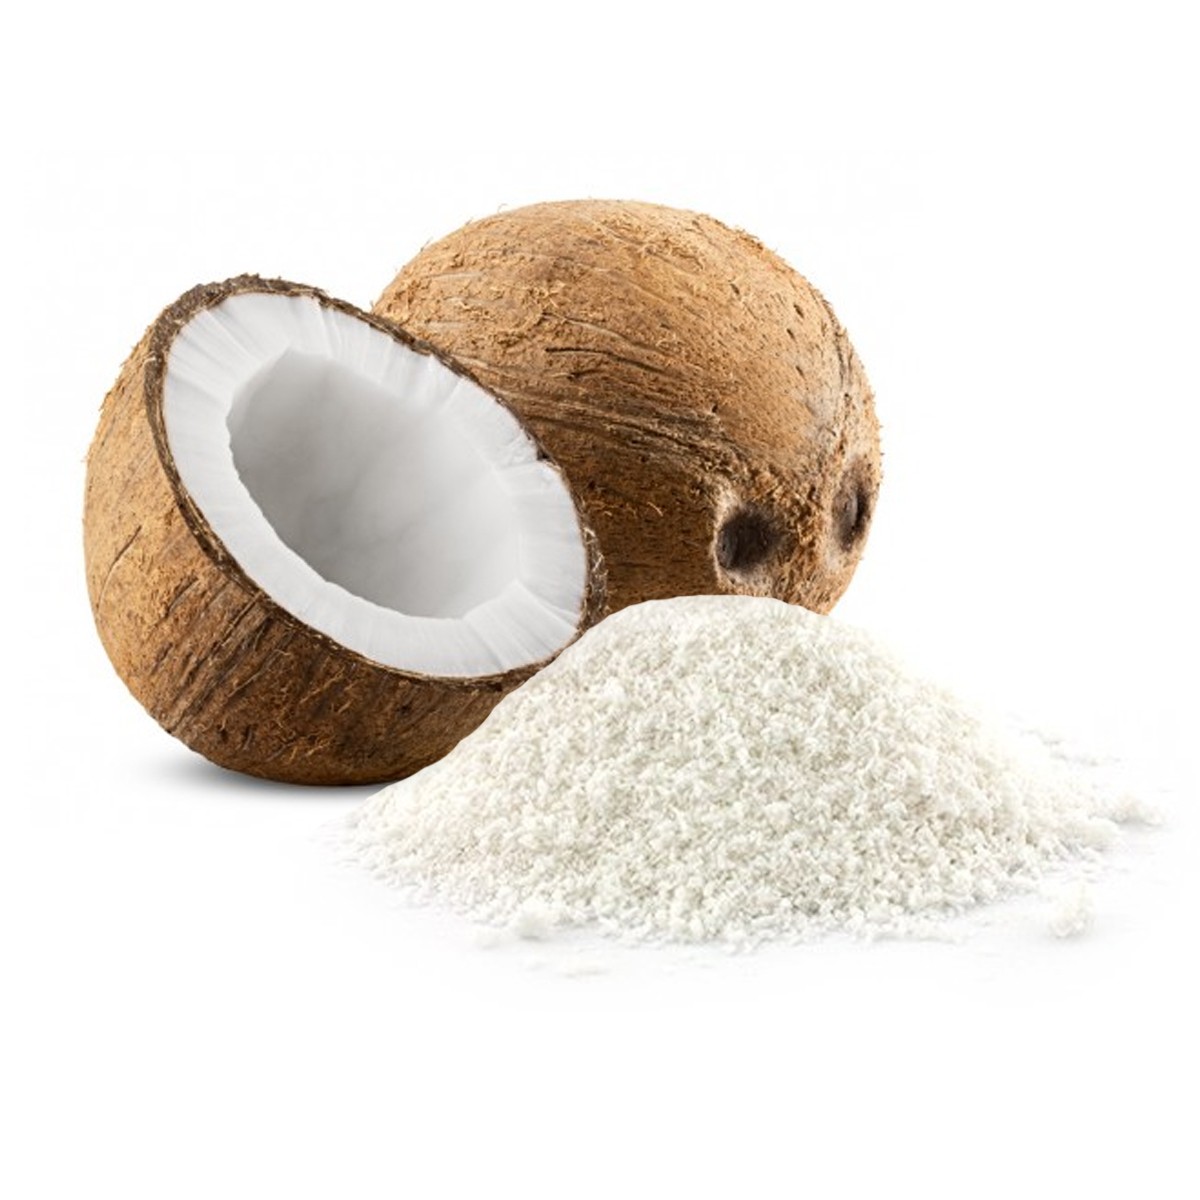 Noix de coco râpée 250g - Appareil des Chefs